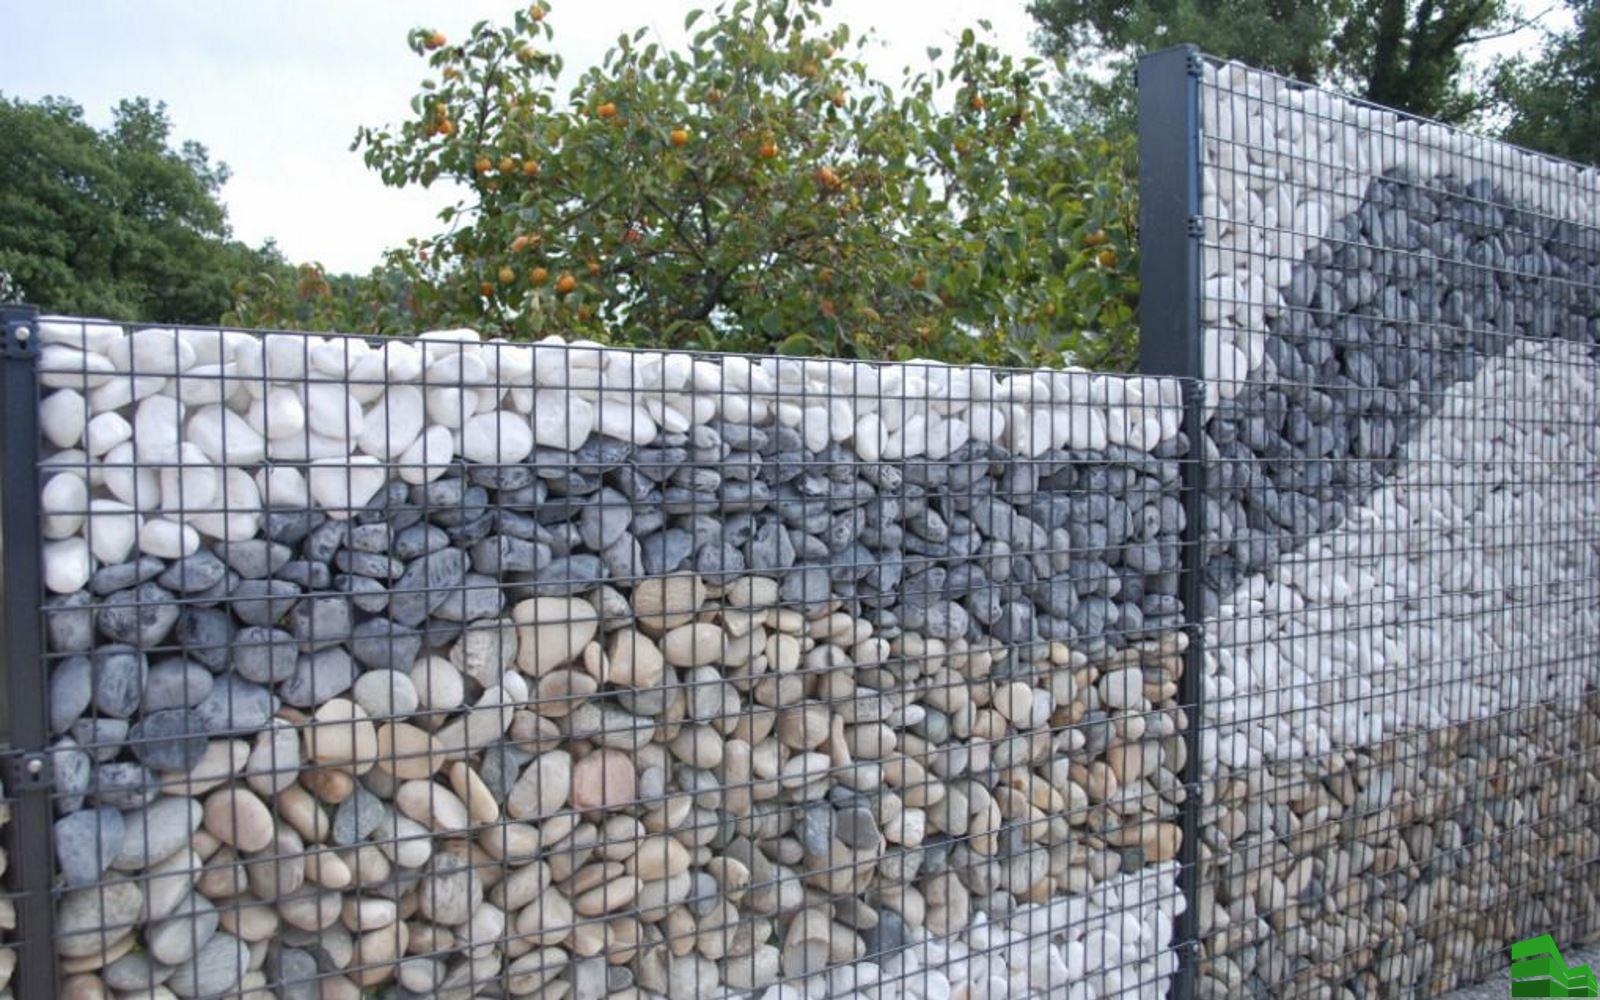 Забор из камня своими руками: пошаговый процесс с пояснениями, как сделать забор